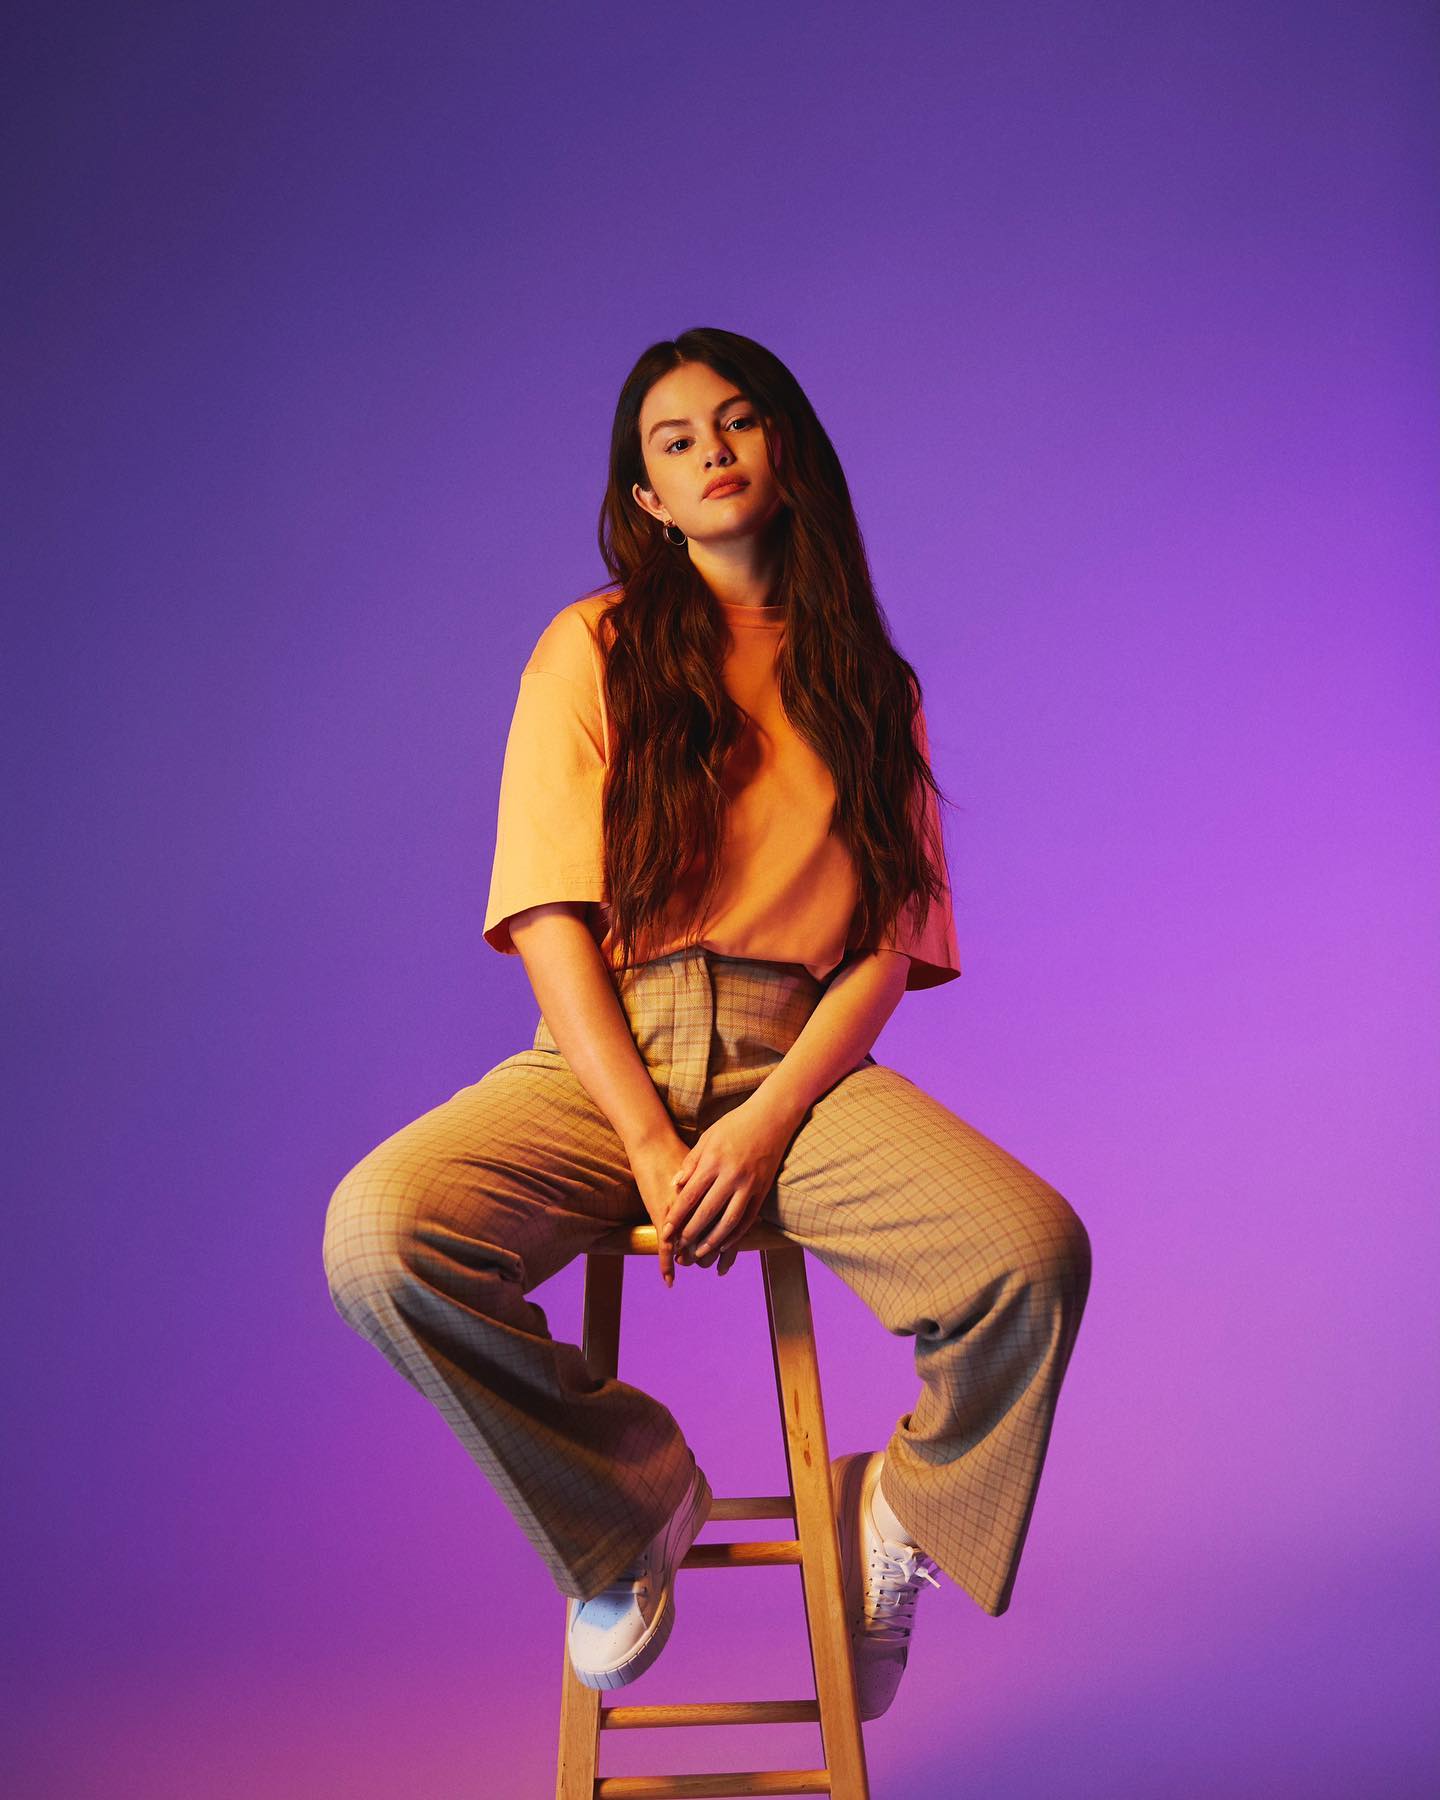 Foto: Reprodução/Instagram/Selena Gomez